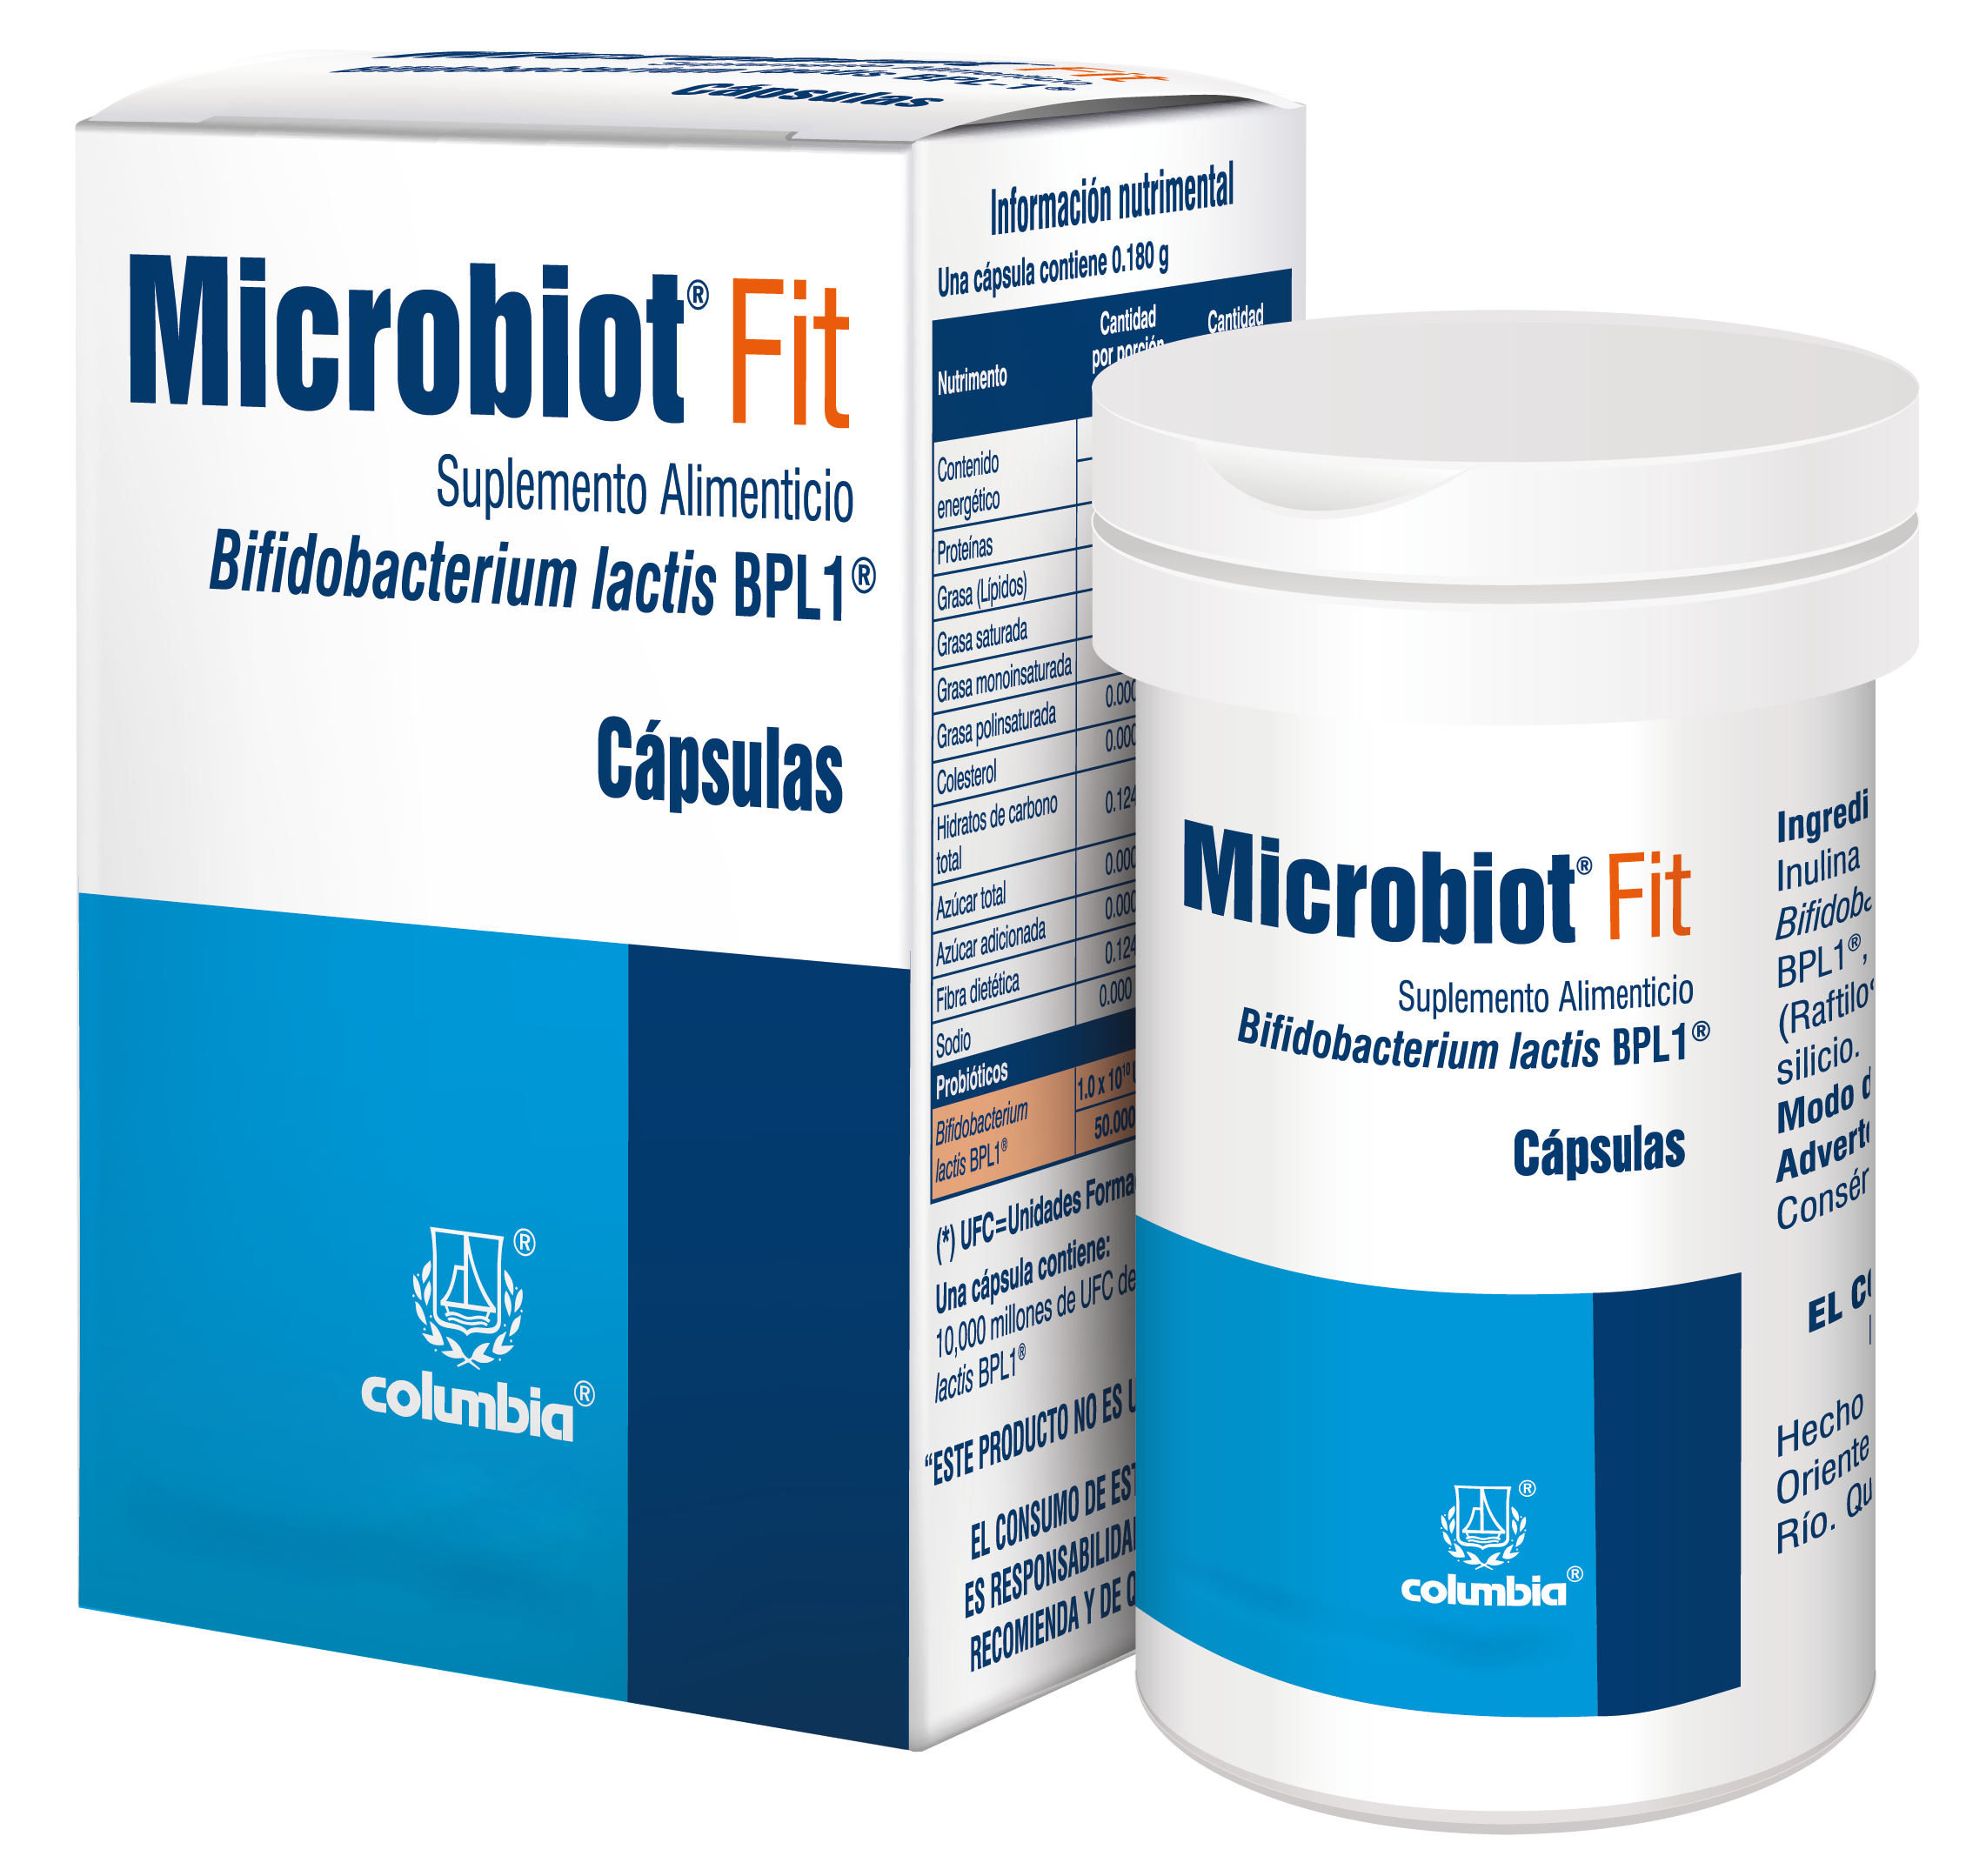 Pshot Microbiotfit Duo Sinc Microbiot Fit ¿Qué Es Y Para Qué Sirve?